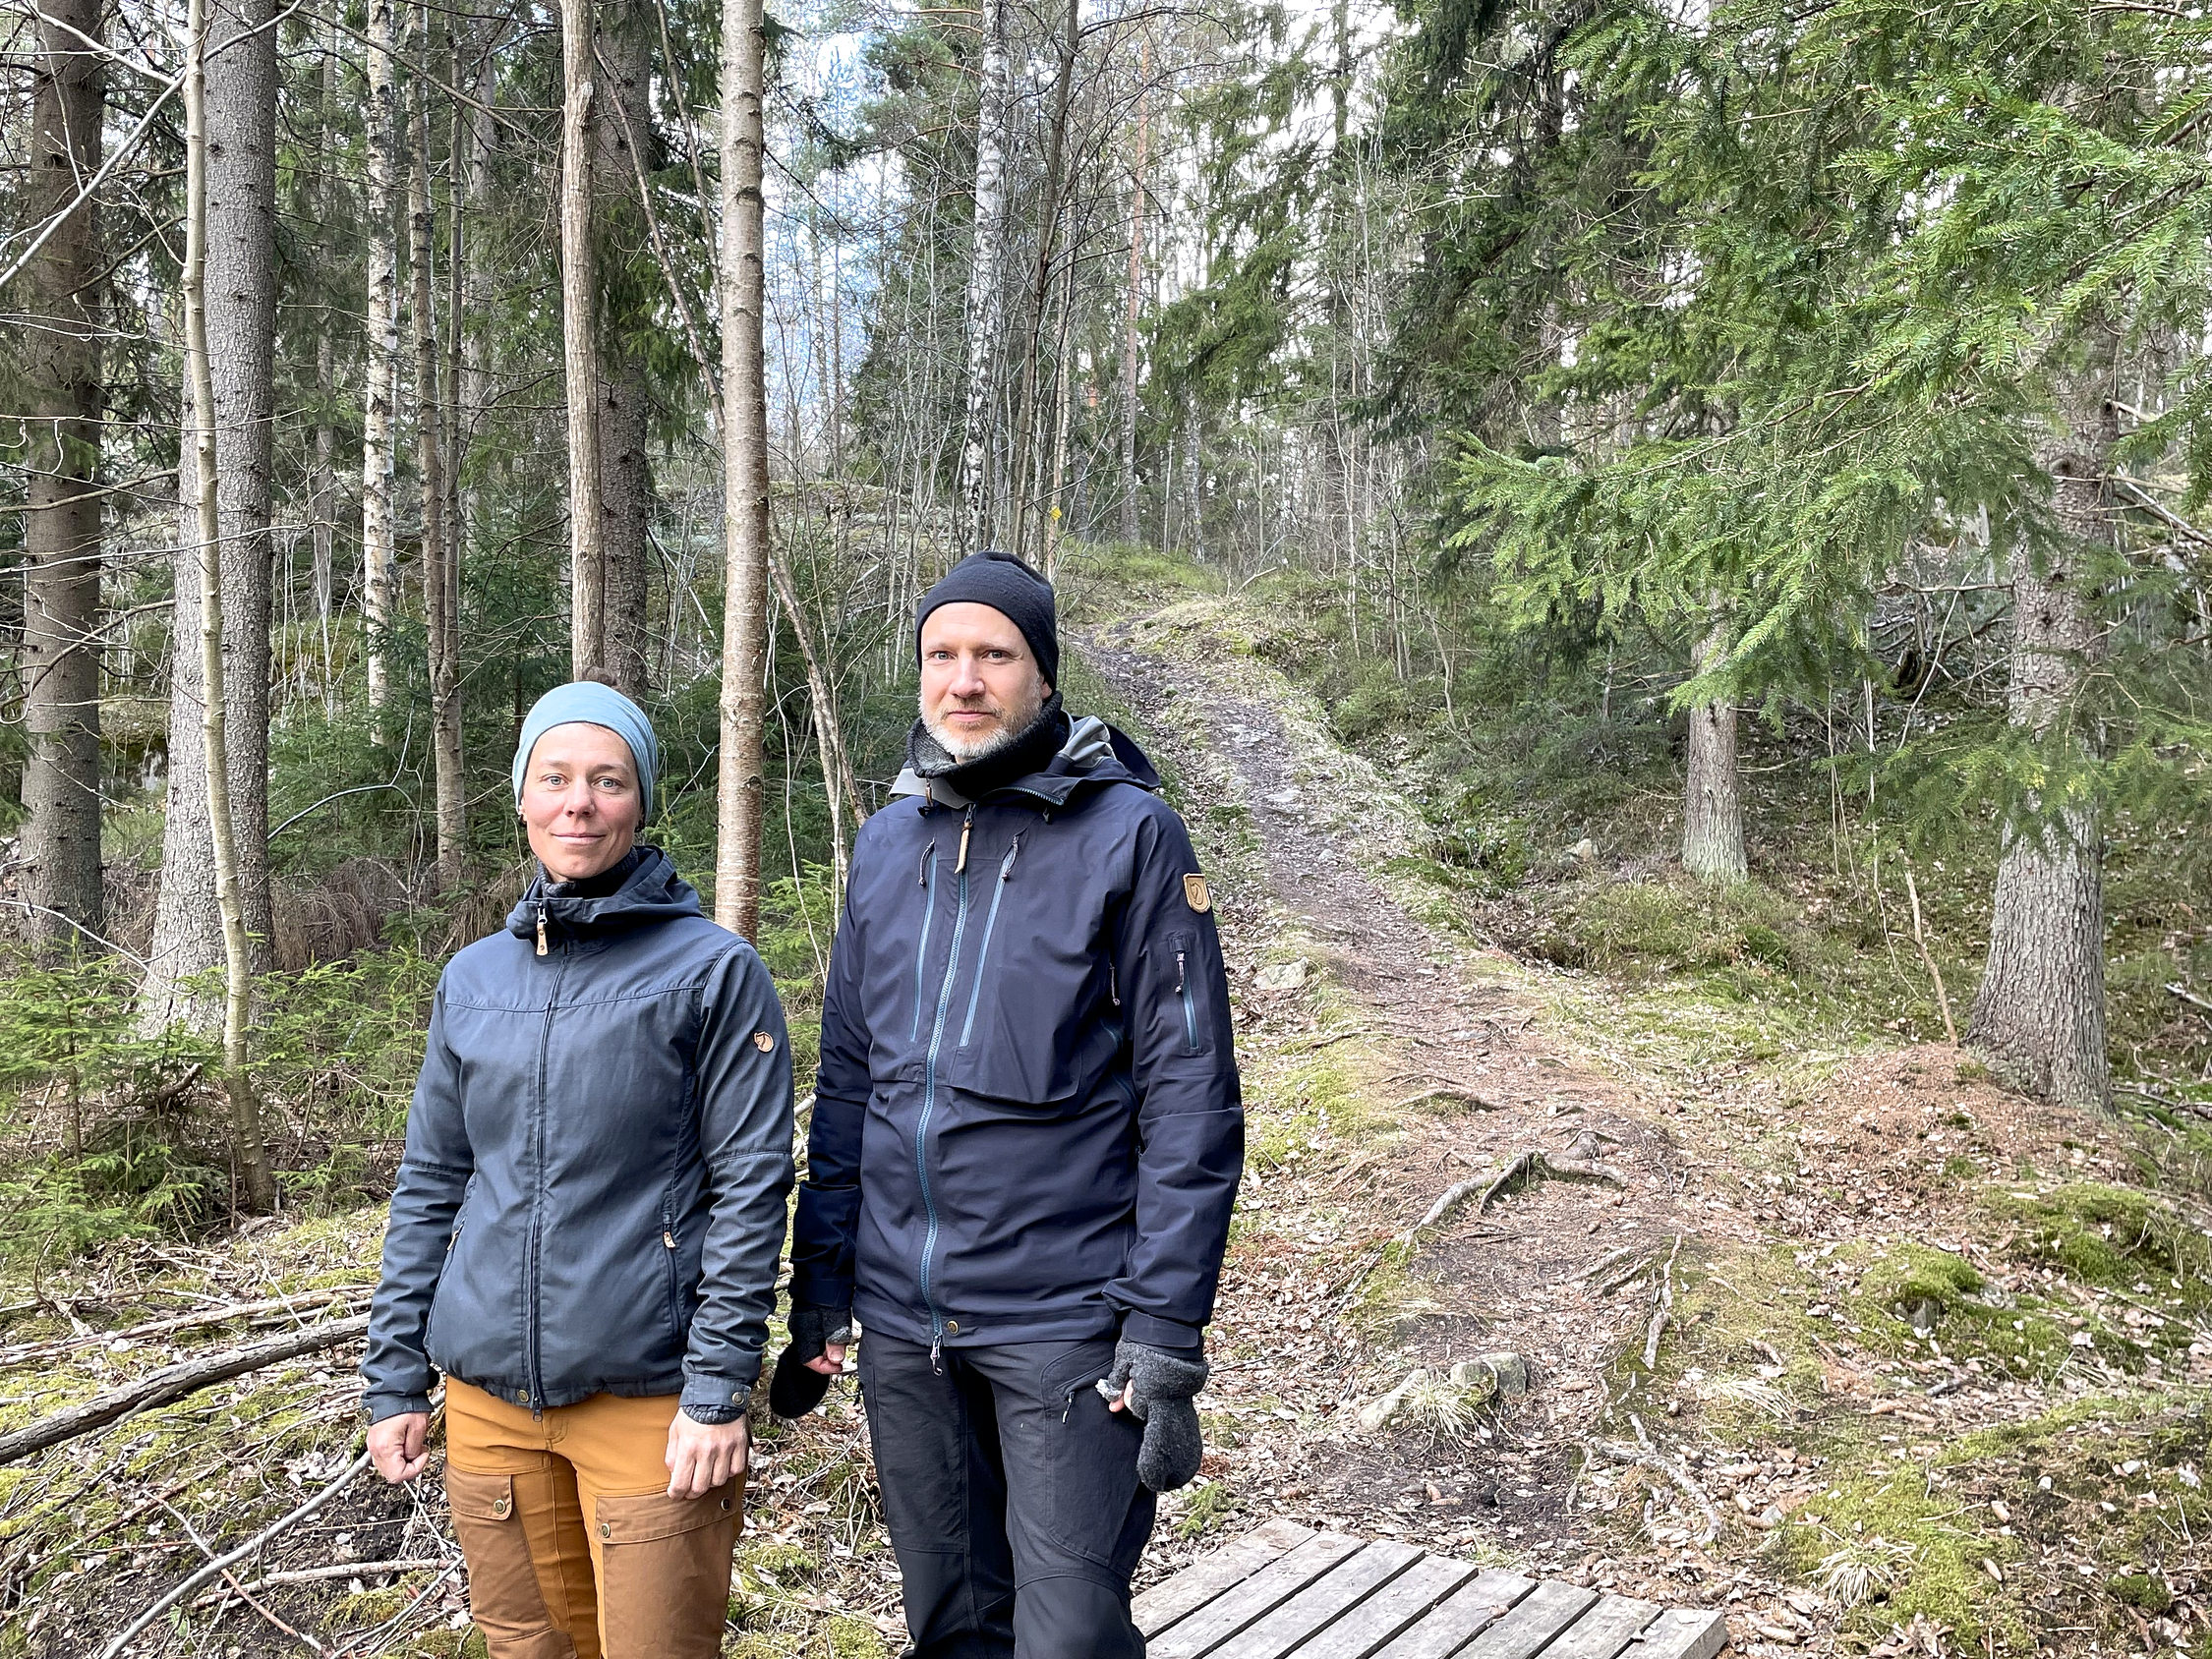 Två personer vid in stig som leder in i en skog